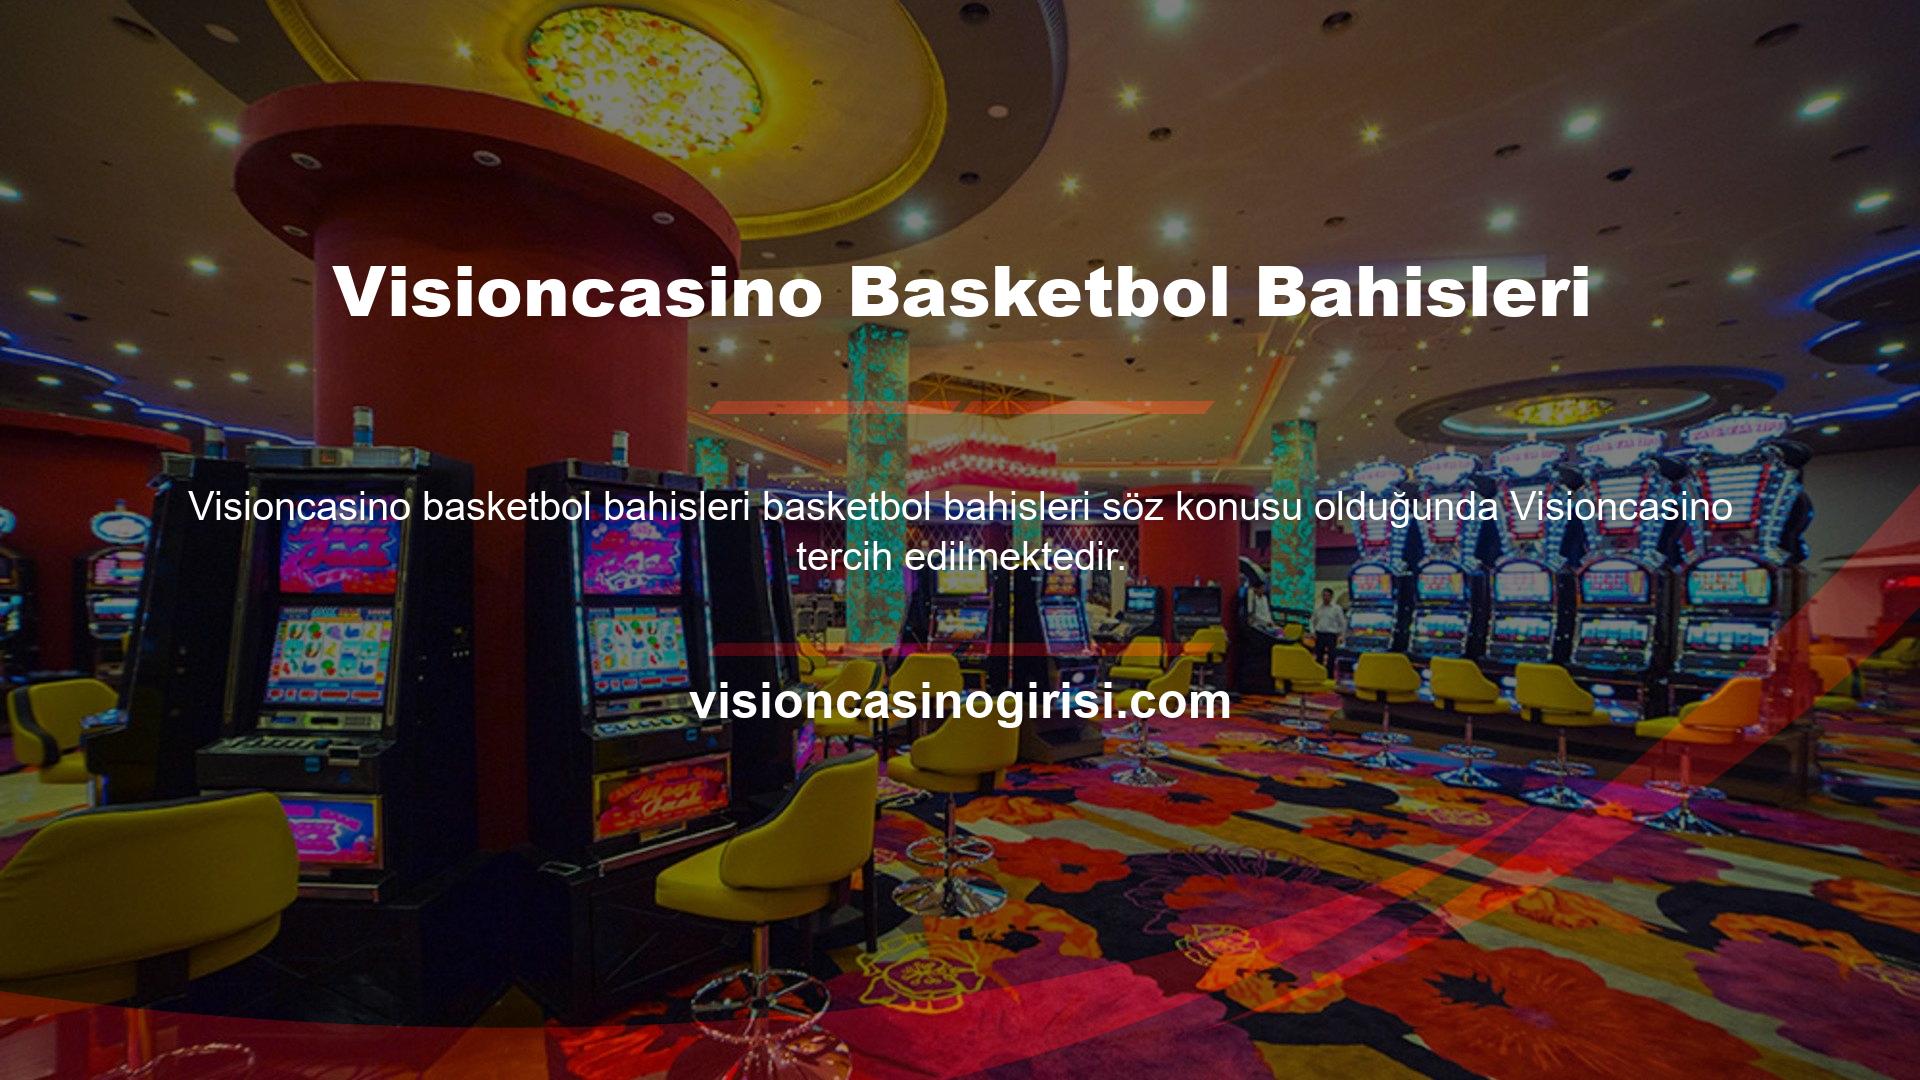 Visioncasino, basketbolda bahis oynayabileceğiniz en karlı şirketlerden biri olarak ülkemizde faaliyetlerine devam etmektedir